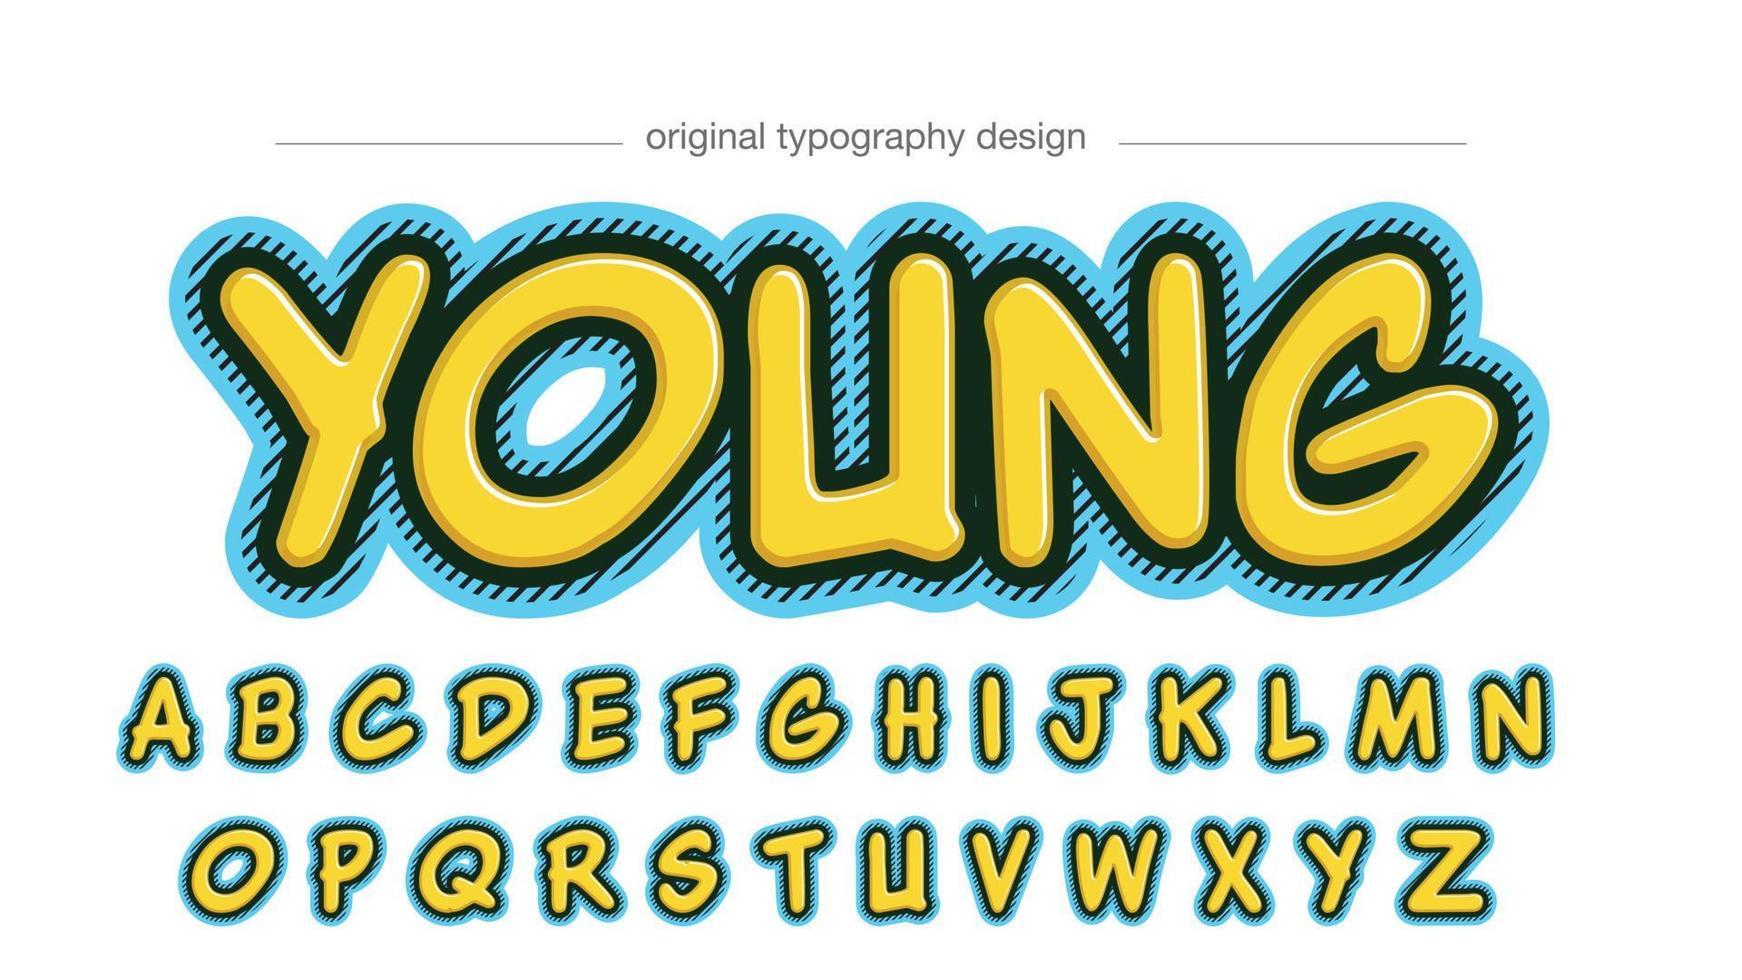 geel en blauw cartoon artistiek lettertype-effect vector